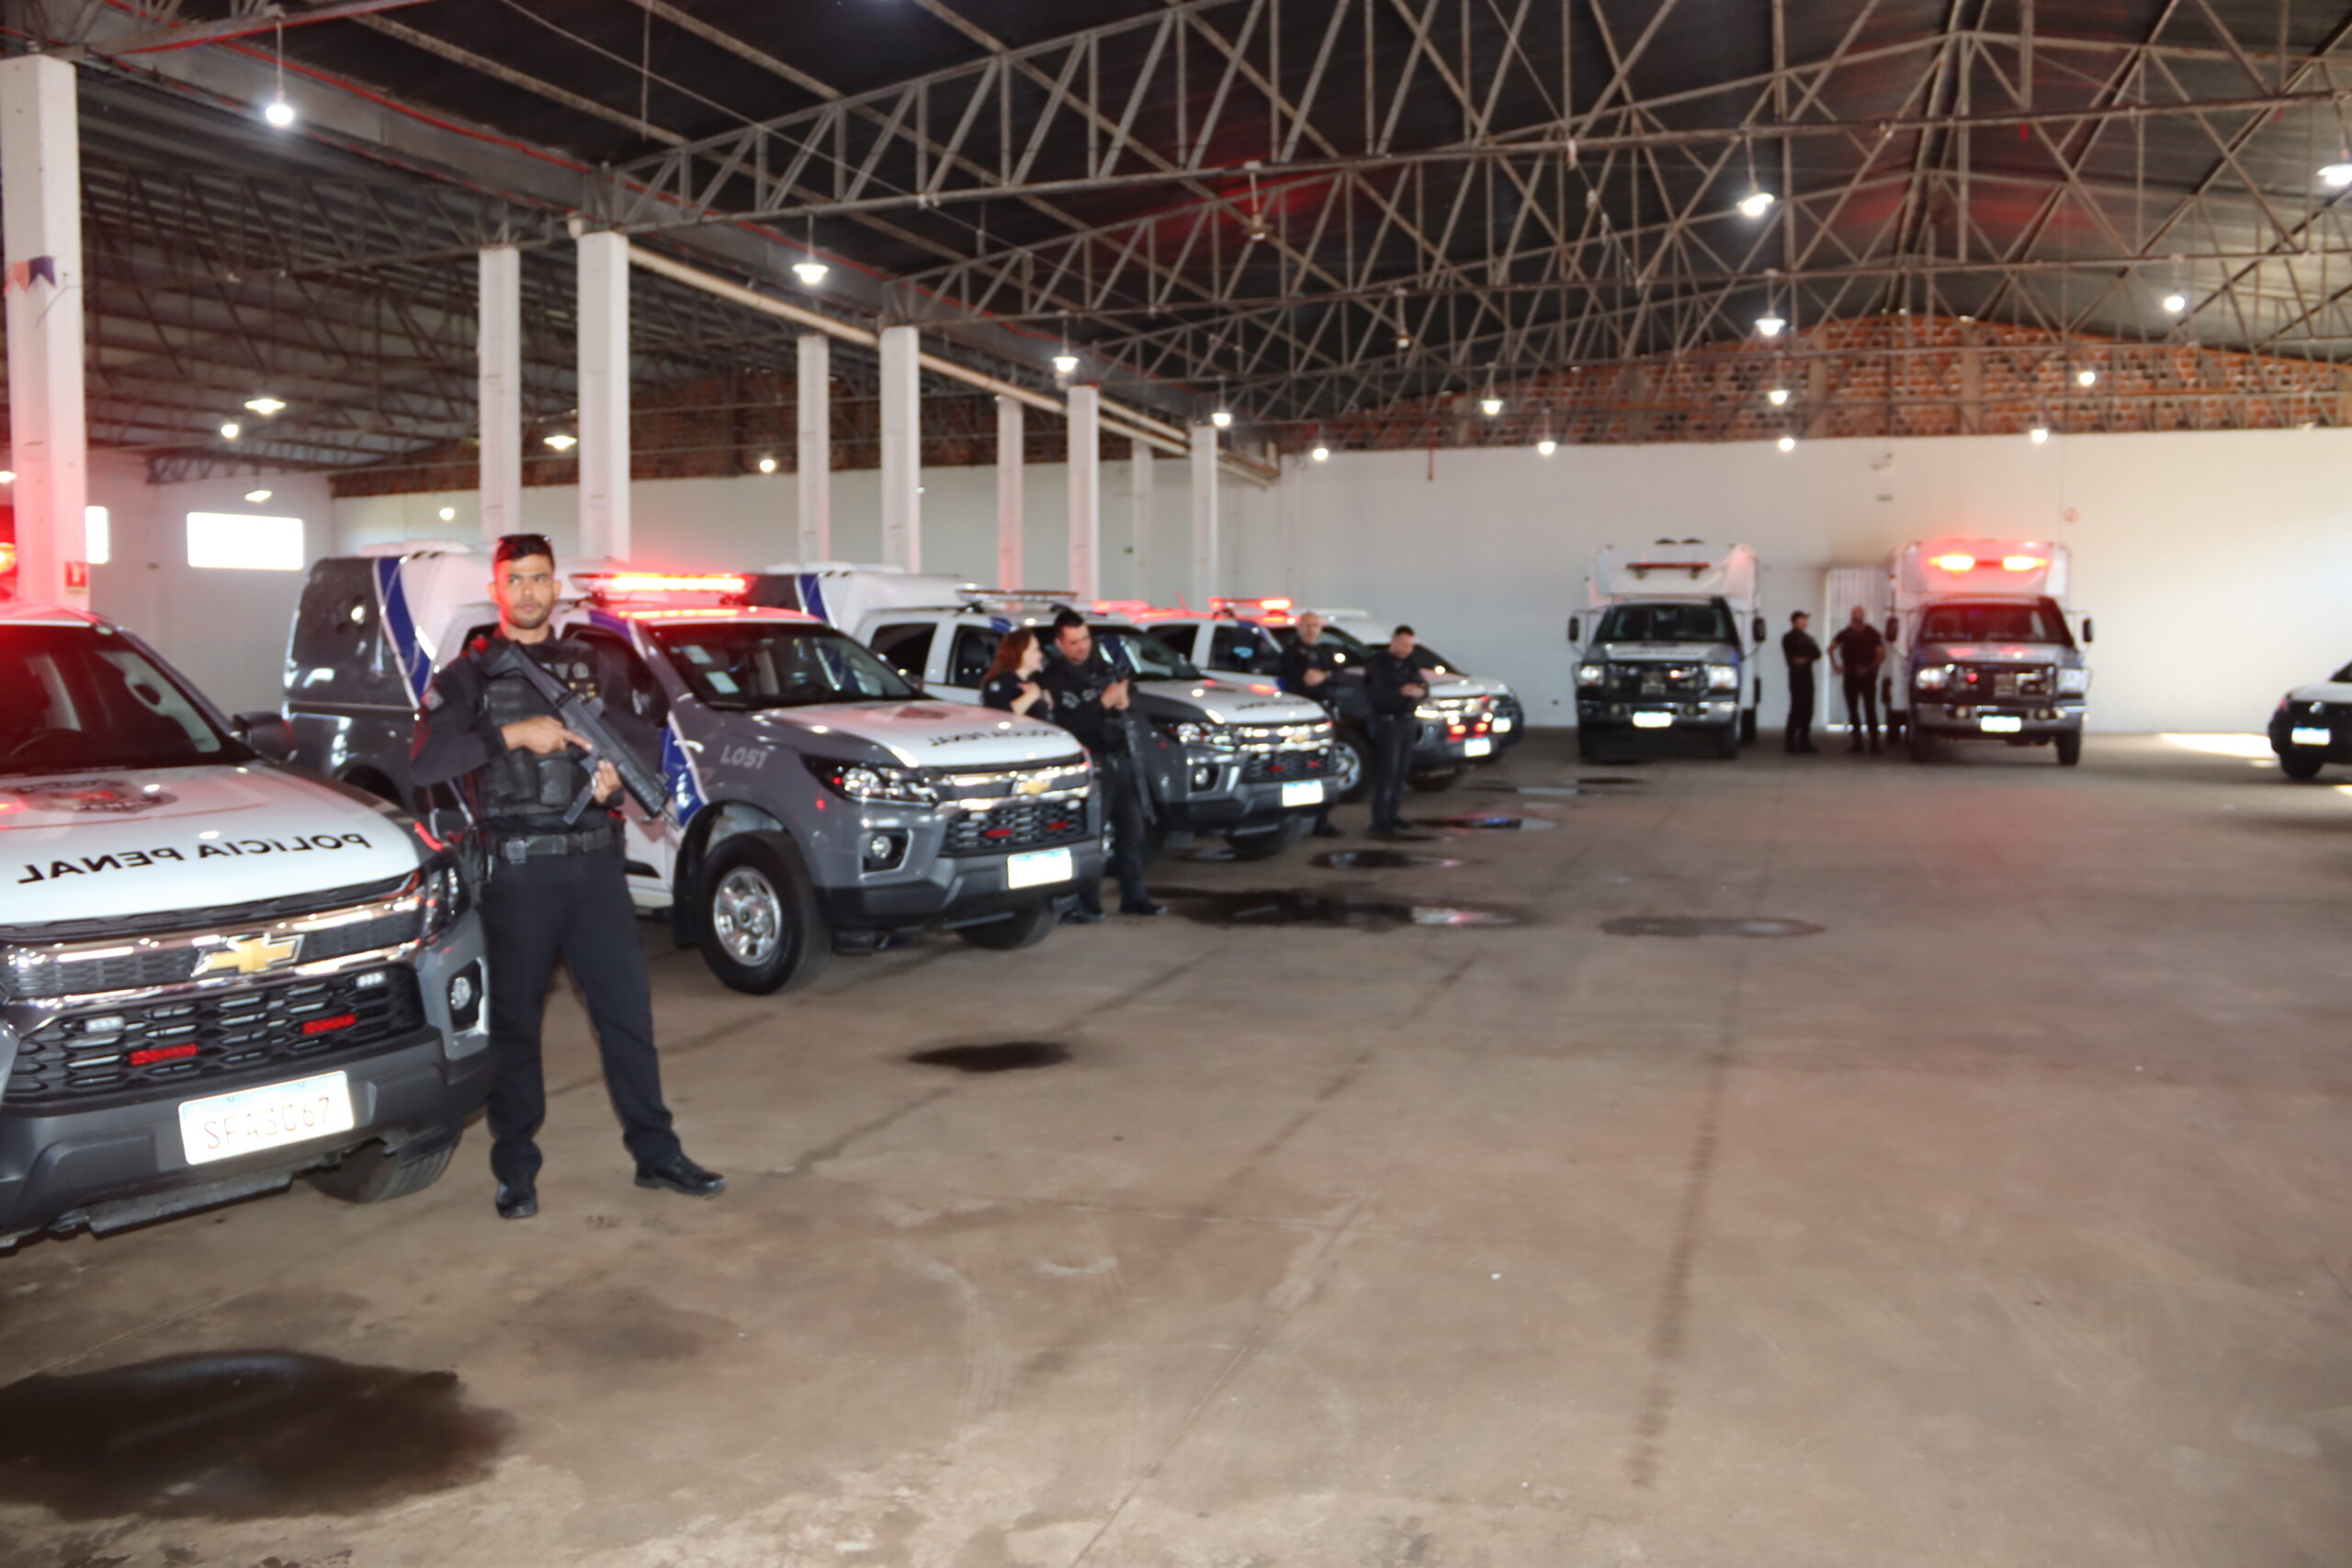 Jornal Ilustrado - Polícia Penal do Estado do Paraná - Regional de Umuarama recebe 27 novos veículos 